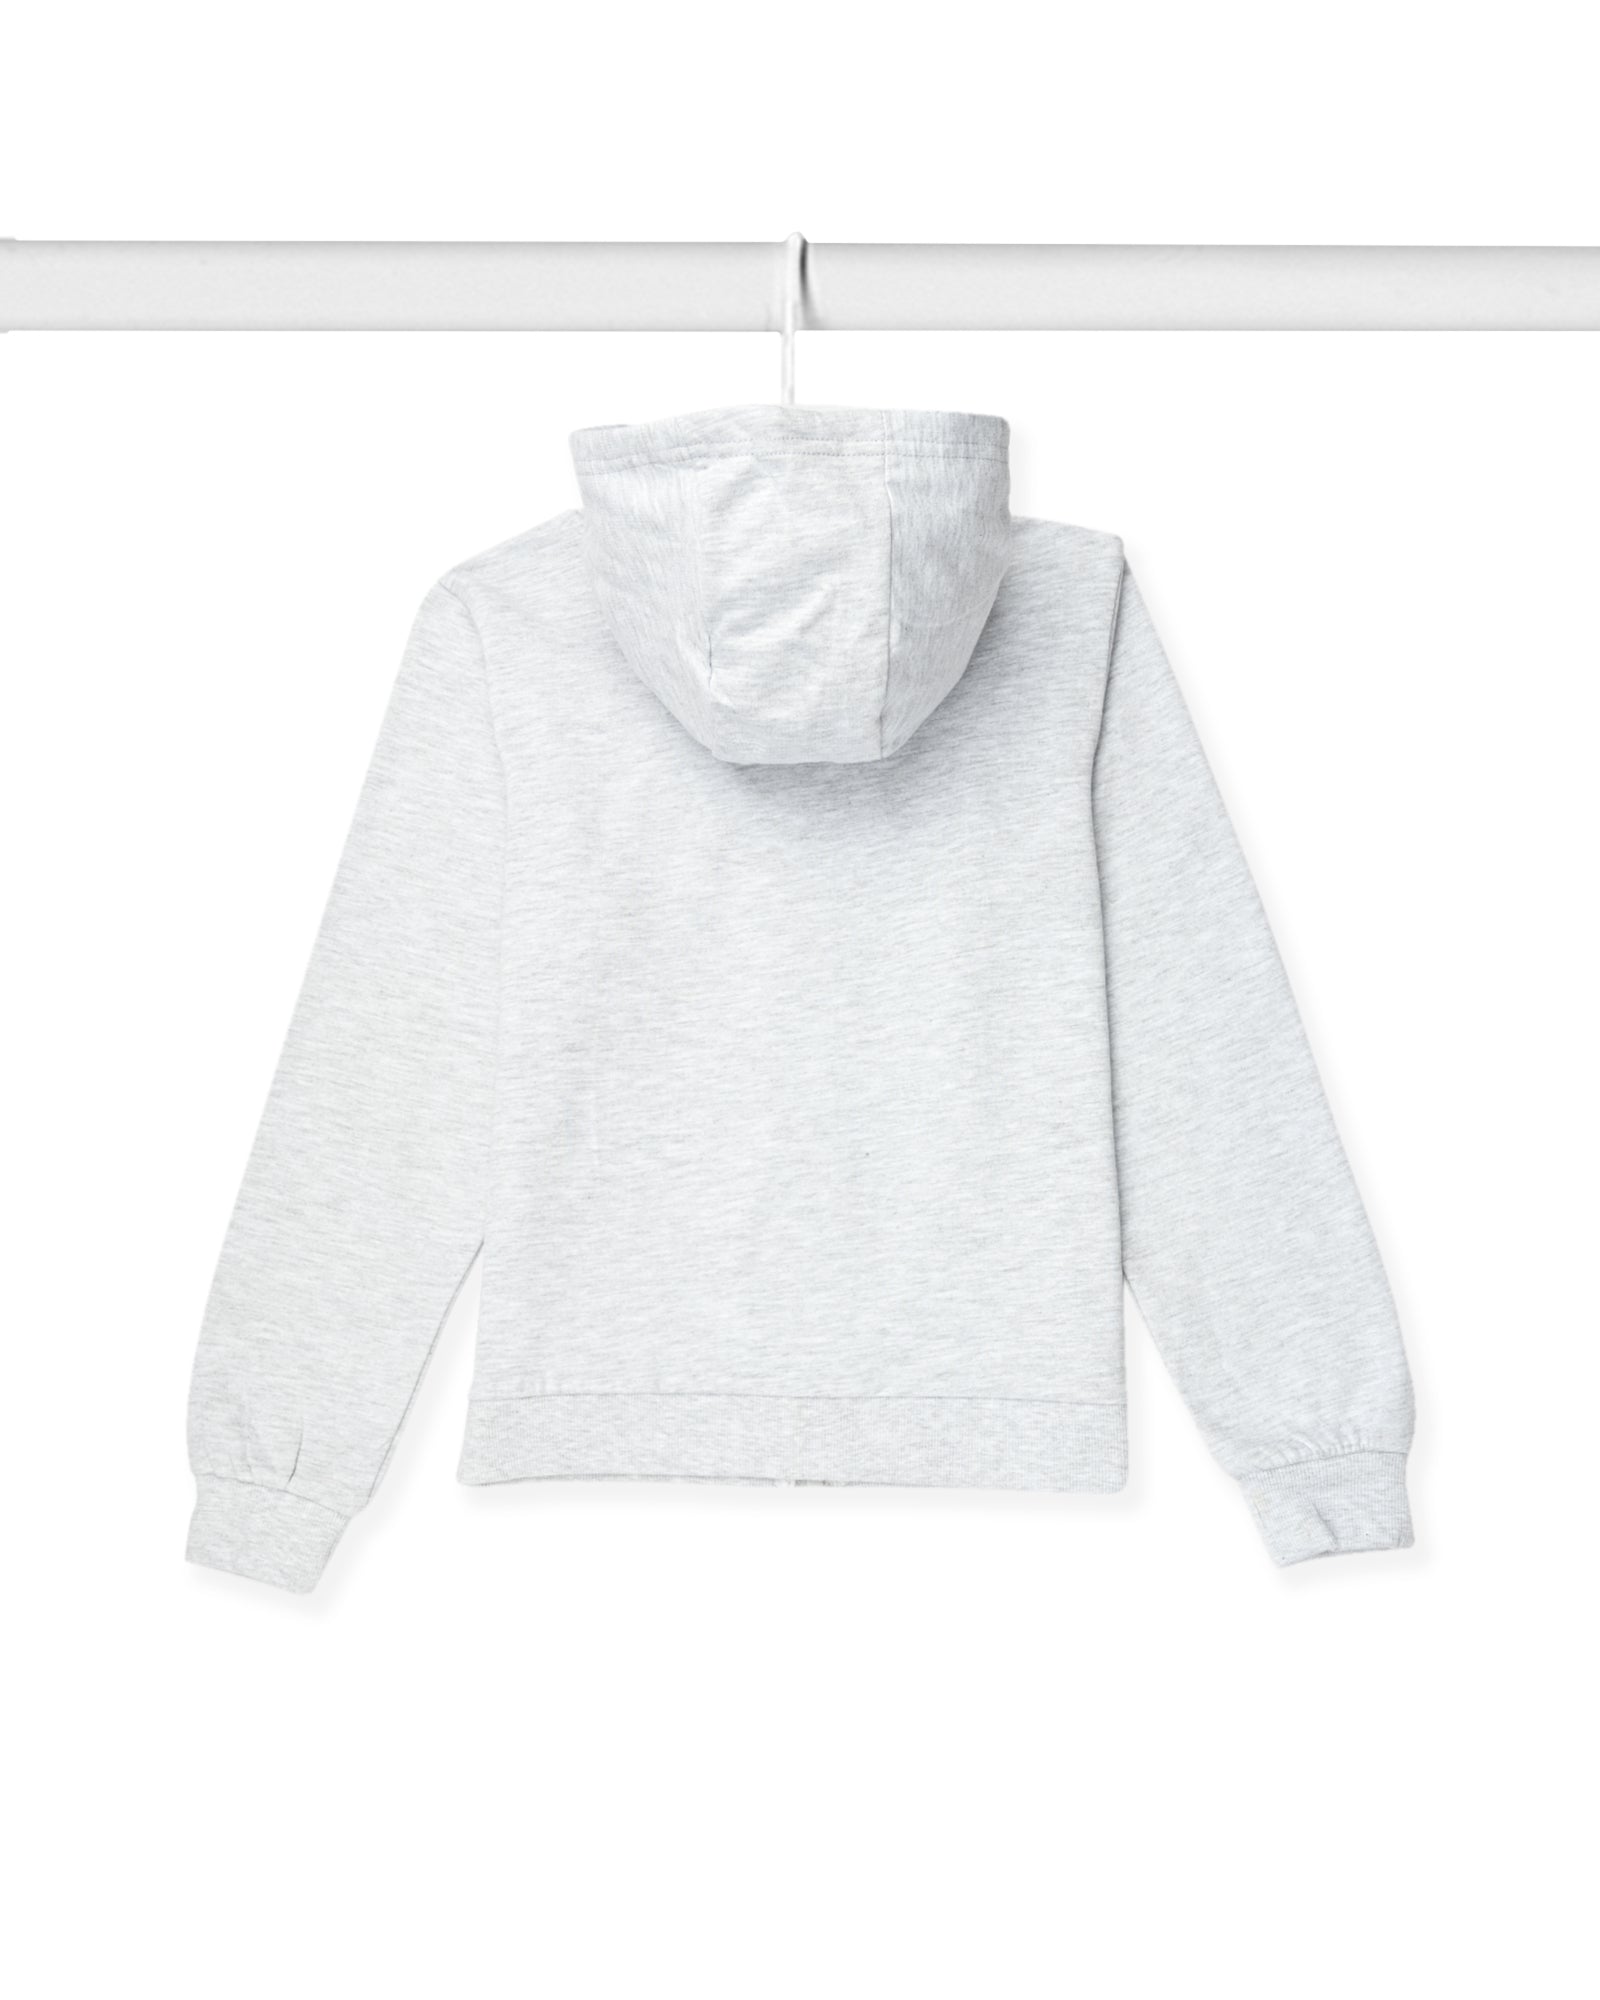 Girls Solid Zipper Hoodie Sweatshirt